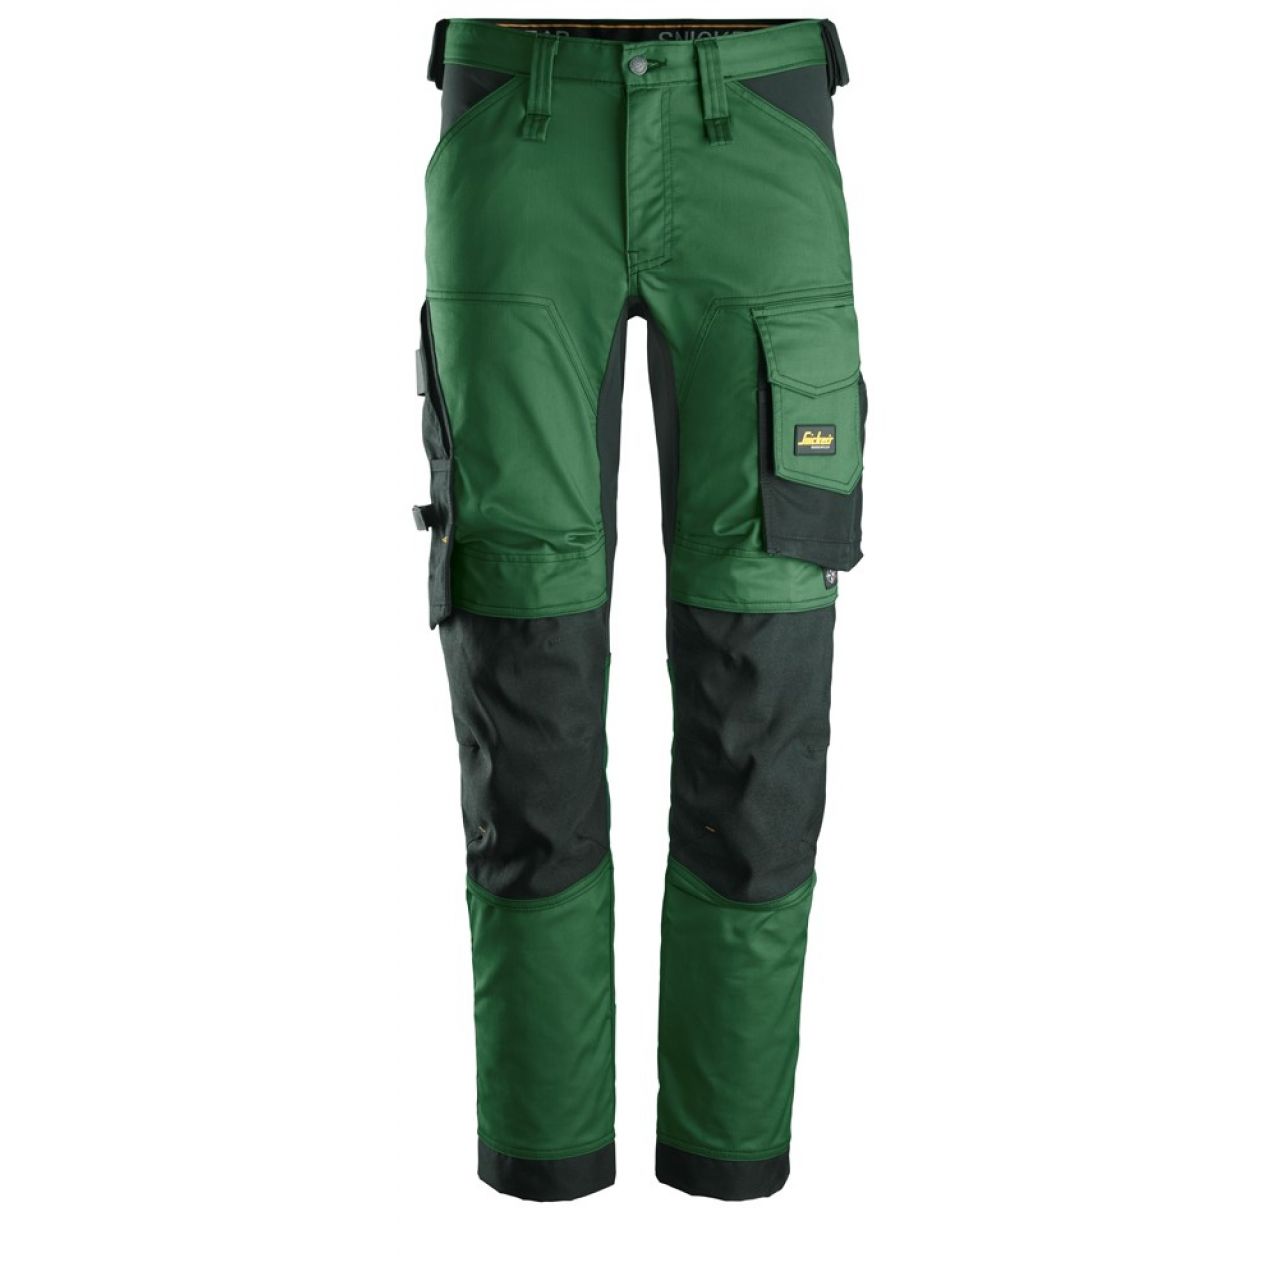 6341 Pantalones largos de trabajo elásticos AllroundWork verde forestal-negro talla 146